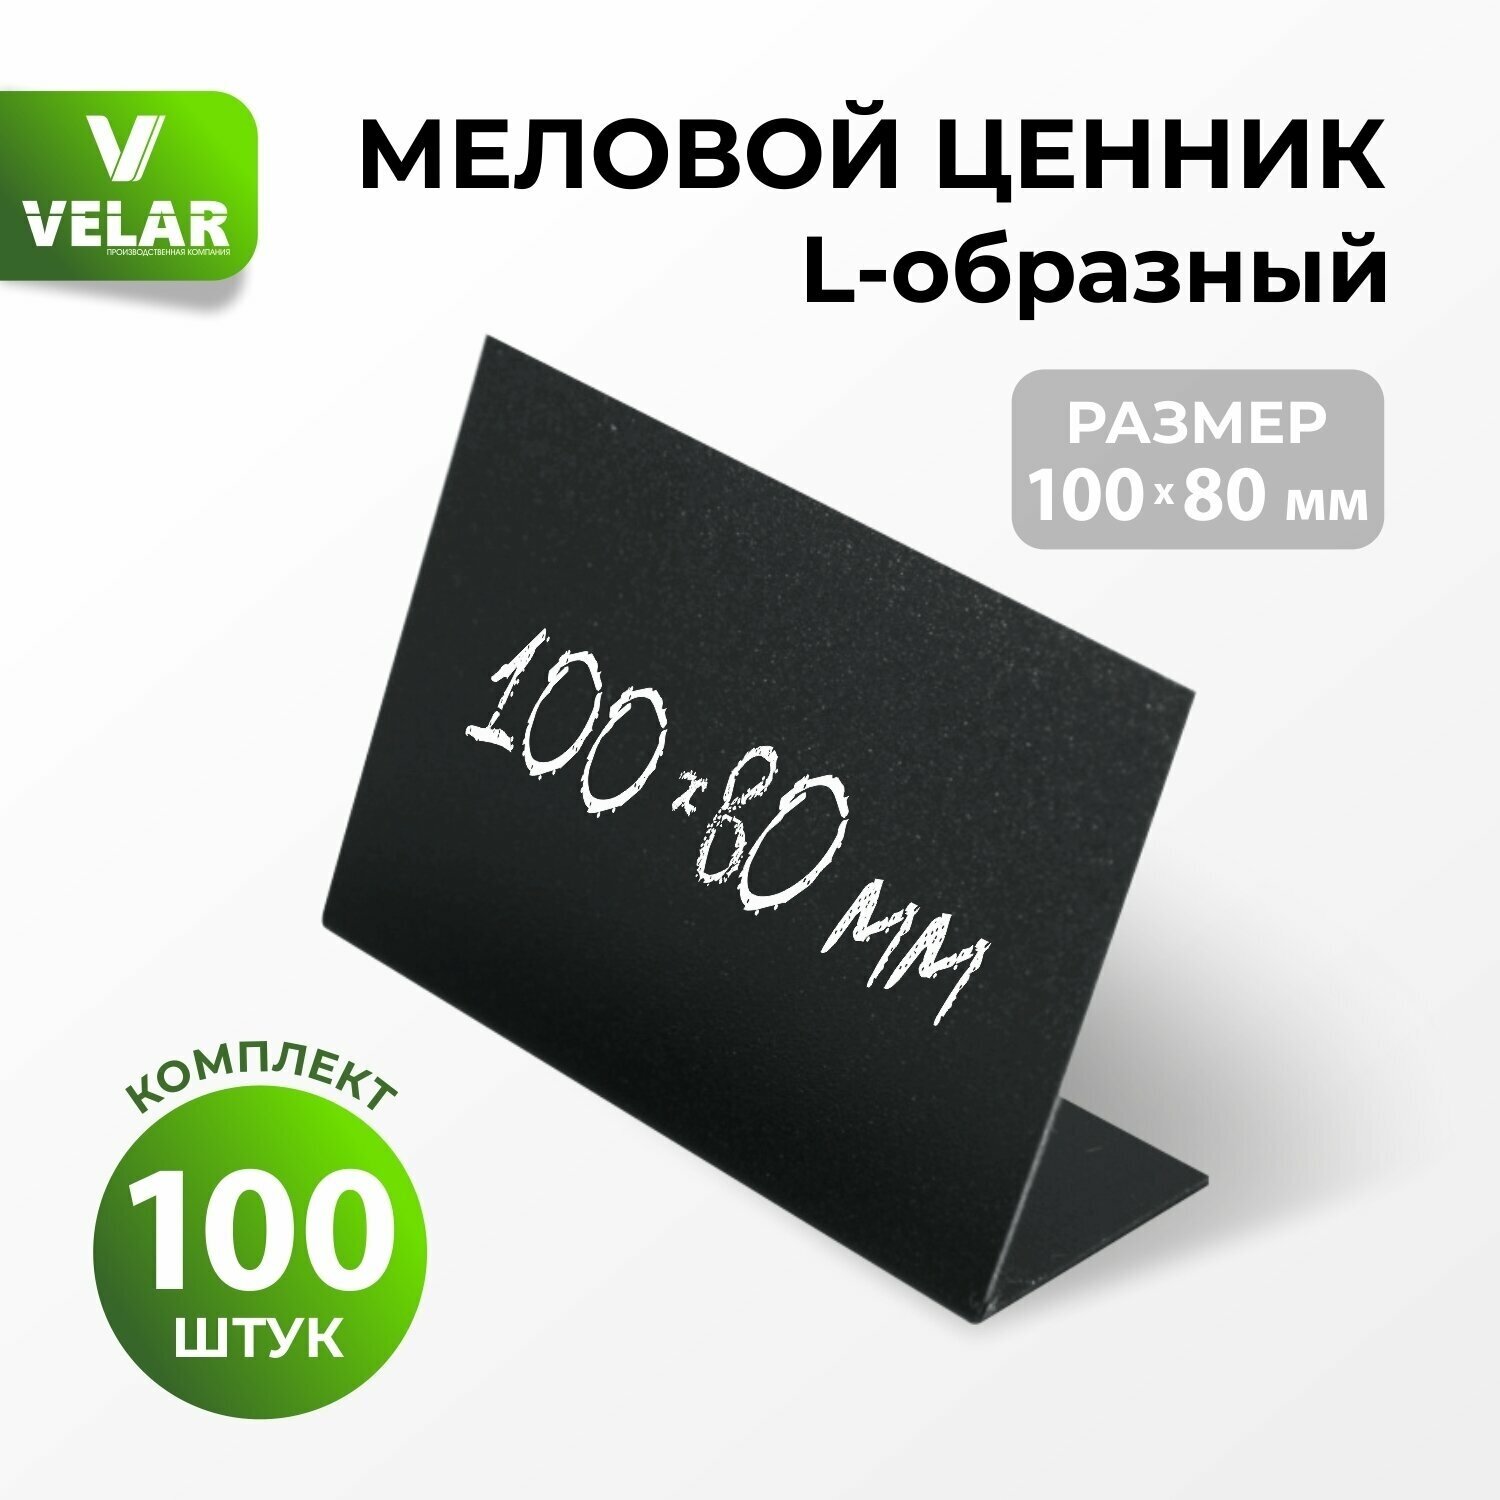 Ценники на товар Ценник меловой L-образный 100x80 мм, 100 шт, Velar